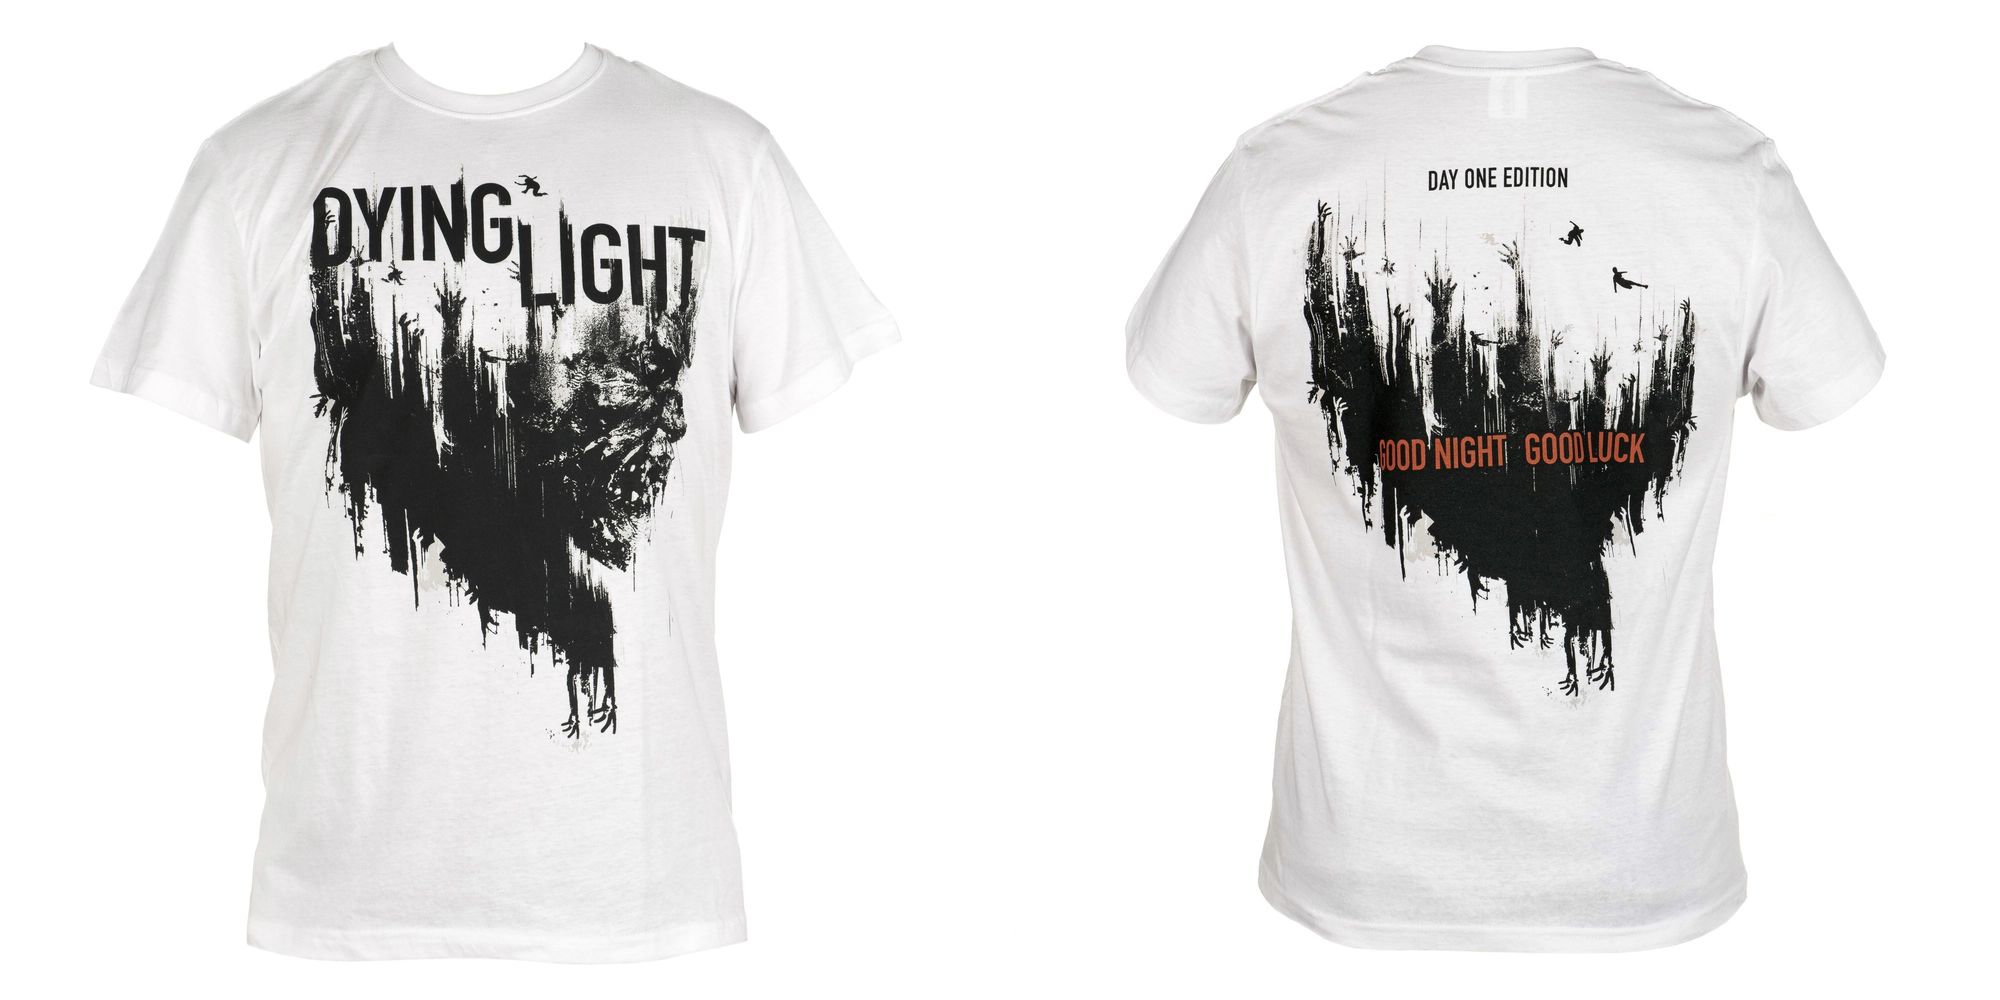 Dying Light Фирменная футболка +3 компьютерные лицензионные игры в подарок по акции!*  - фото